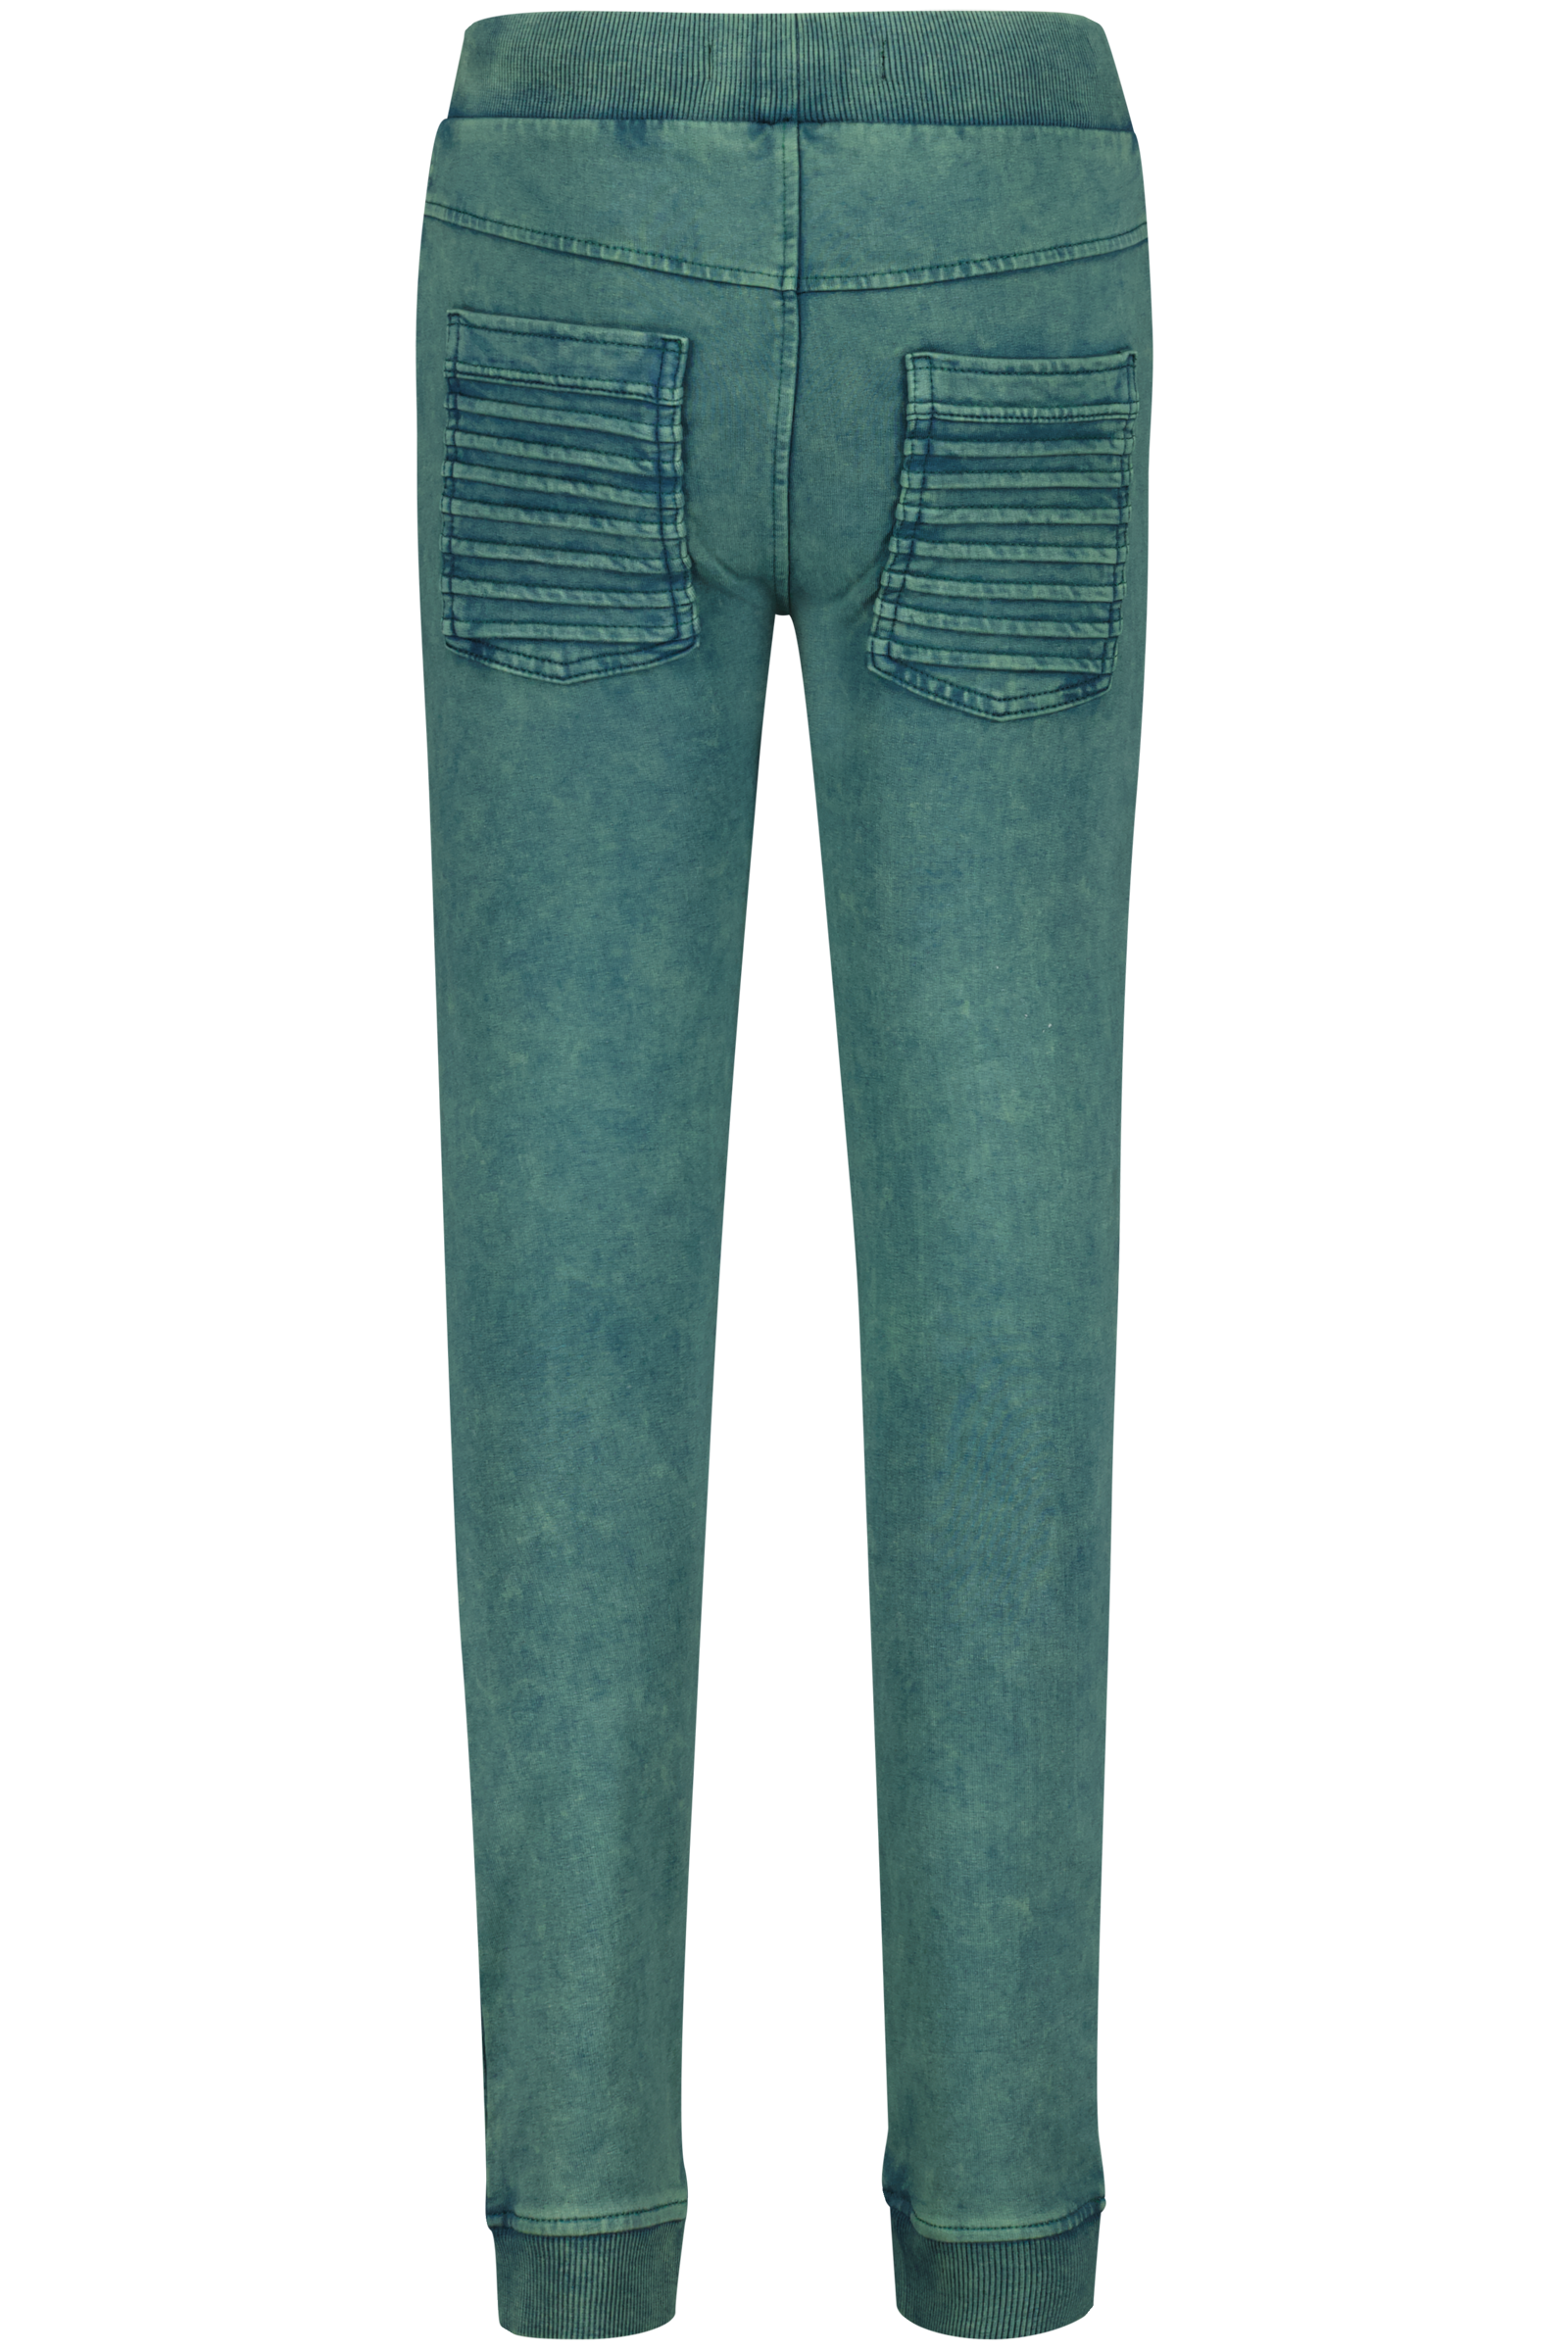 4PRESIDENT Qion Rain forest jongens jeans